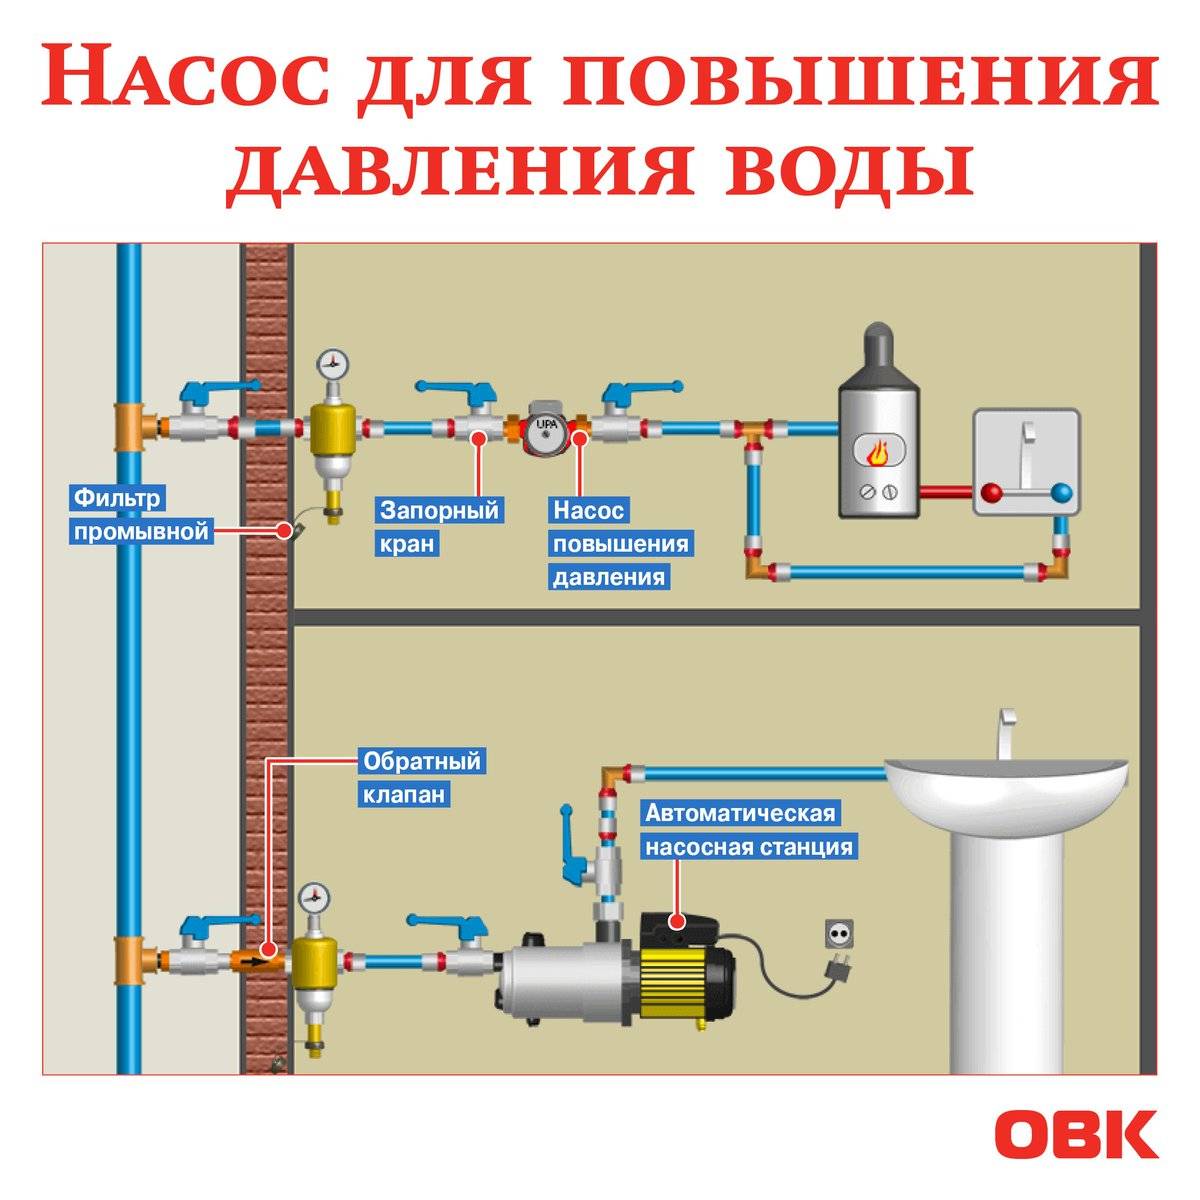 Давление воды в водопроводе — единицы измерения, нормы, метод: учебник сантехника